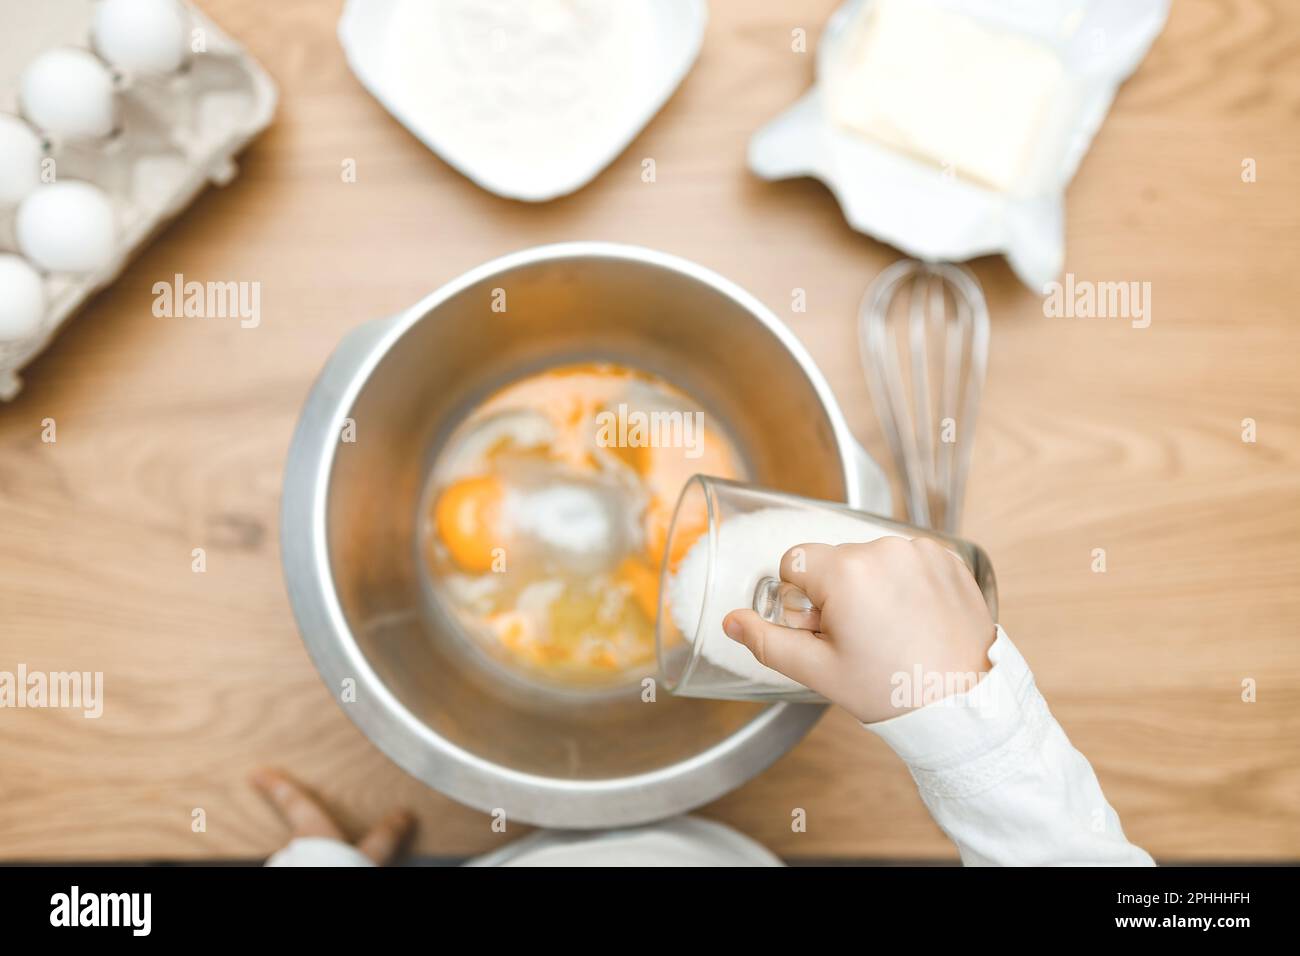 Les mains des enfants saupoudrer le sucre. Oeufs, beurre, farine. Cuisson des ingrédients dans un bol, prêt à mélanger la pâte. Livre de cuisine. Banque D'Images